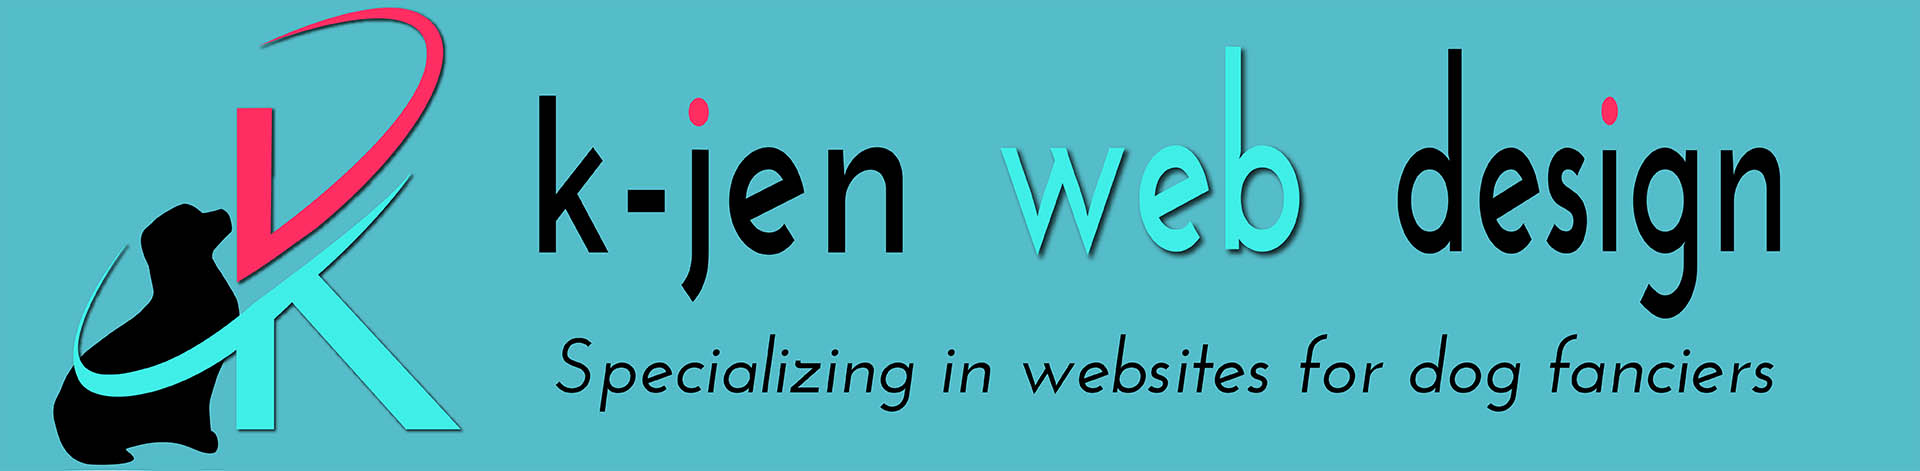 show dog website design kjen web design logo